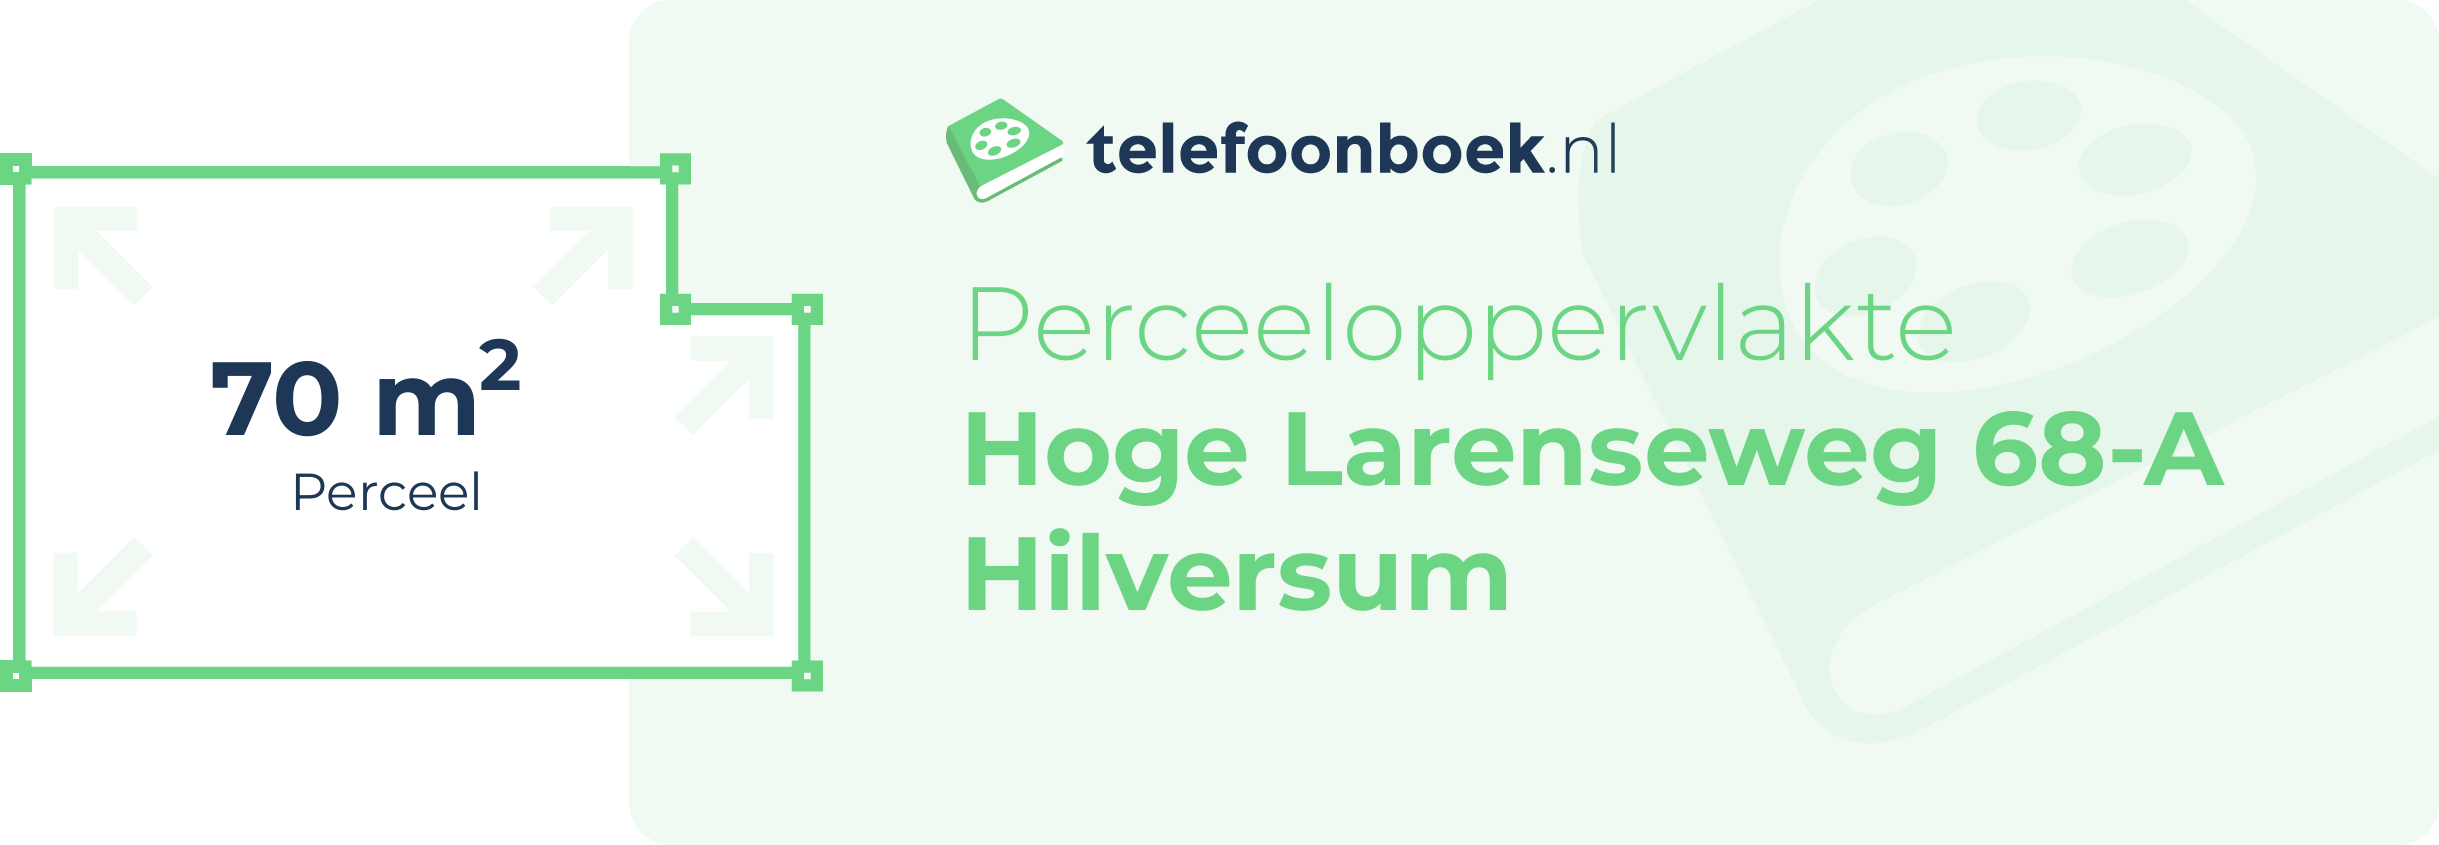 Perceeloppervlakte Hoge Larenseweg 68-A Hilversum